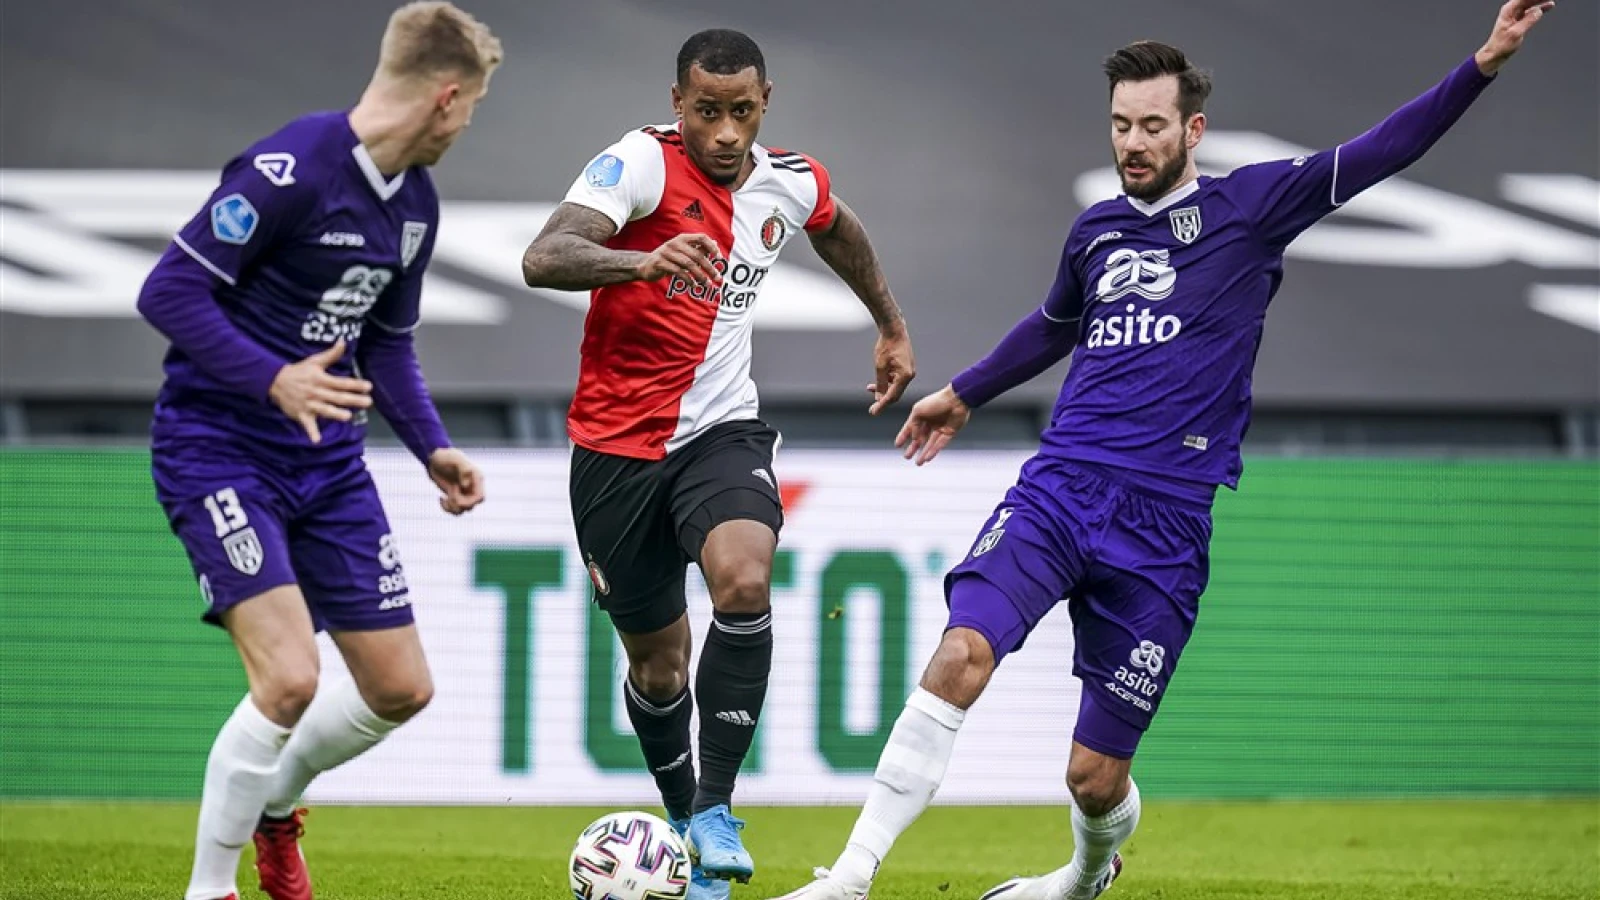 LIVE | Feyenoord - Heracles Almelo 0-0 | Einde wedstrijd